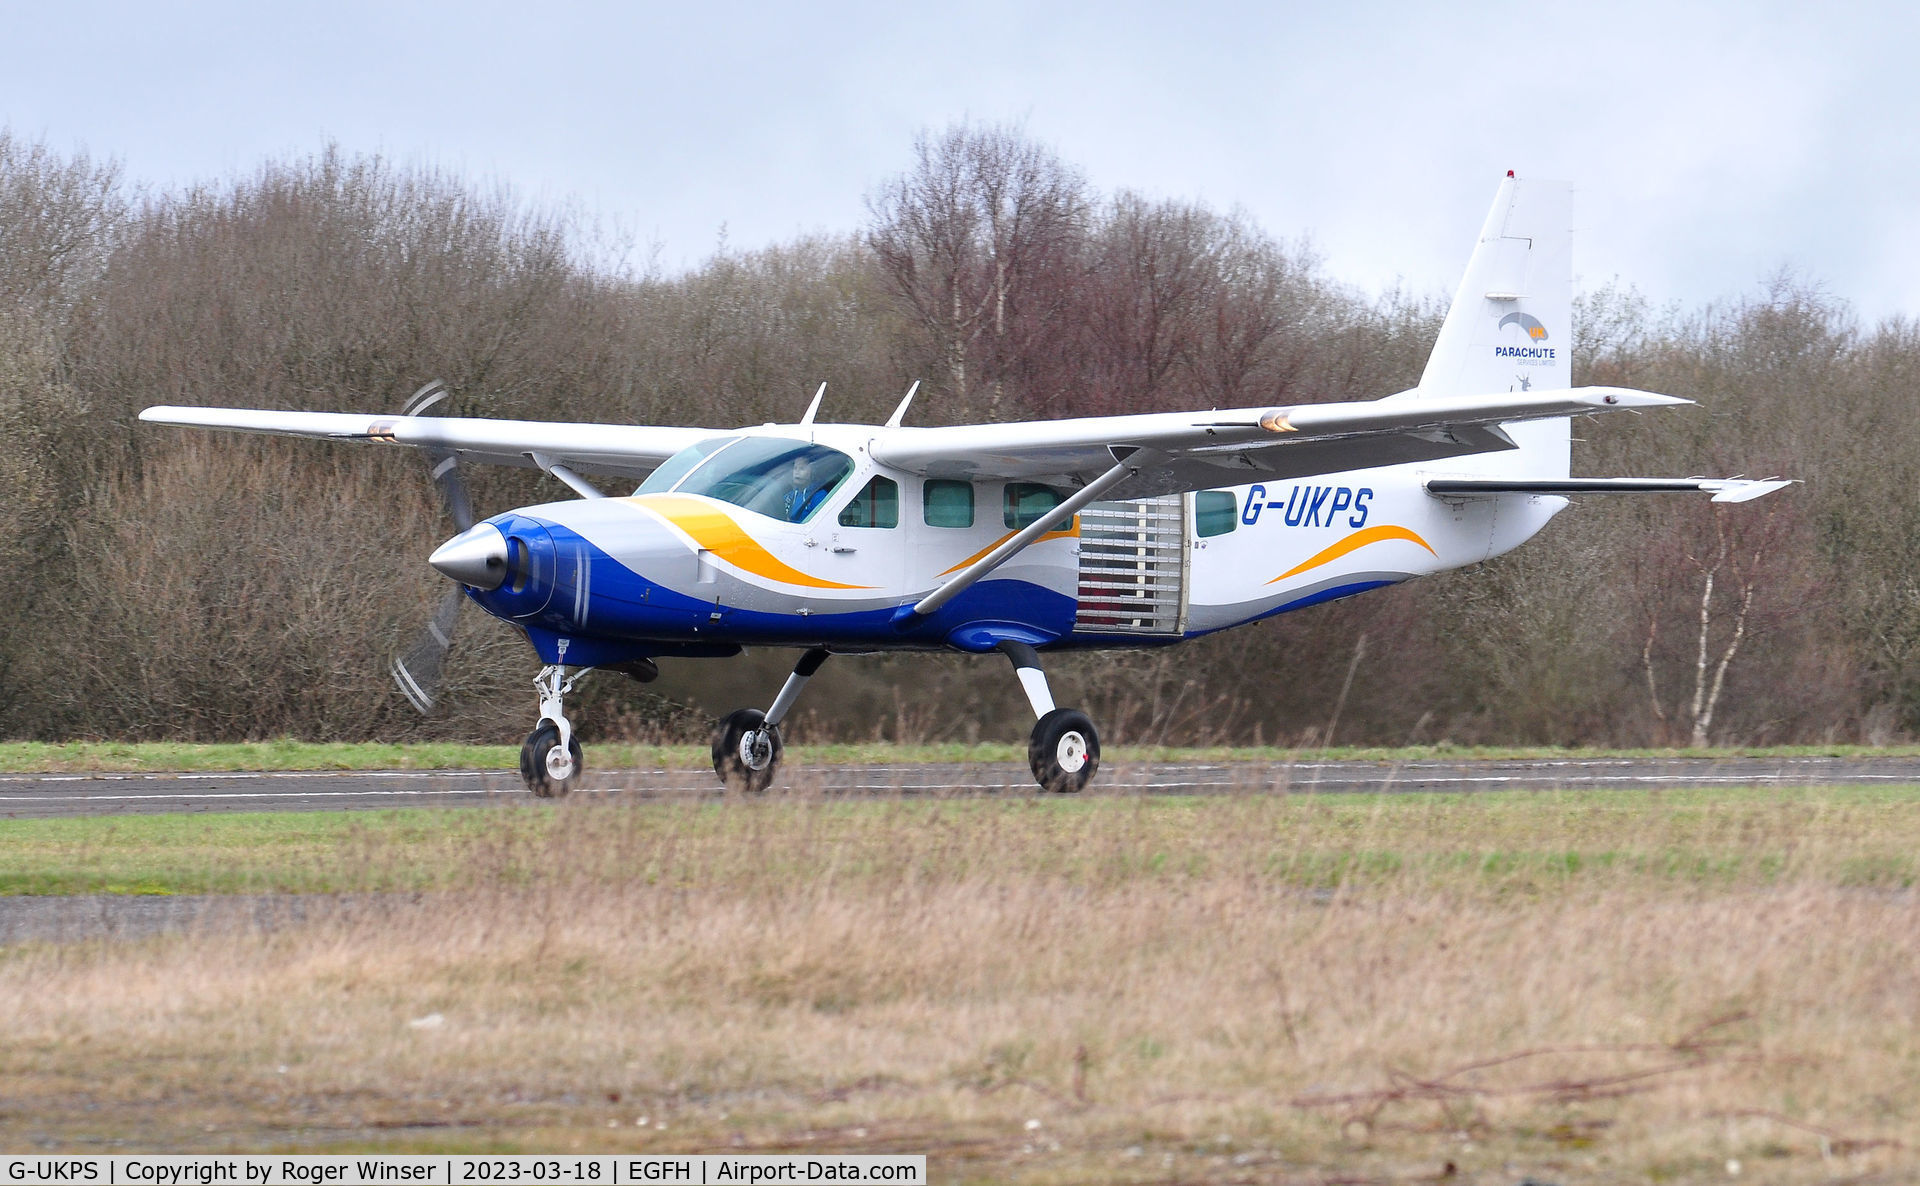 G-UKPS, 2007 Cessna 208 Caravan 1 C/N 20800423, Resident Caravan aircraft operated by Skydive Swansea arriving Runway 22..